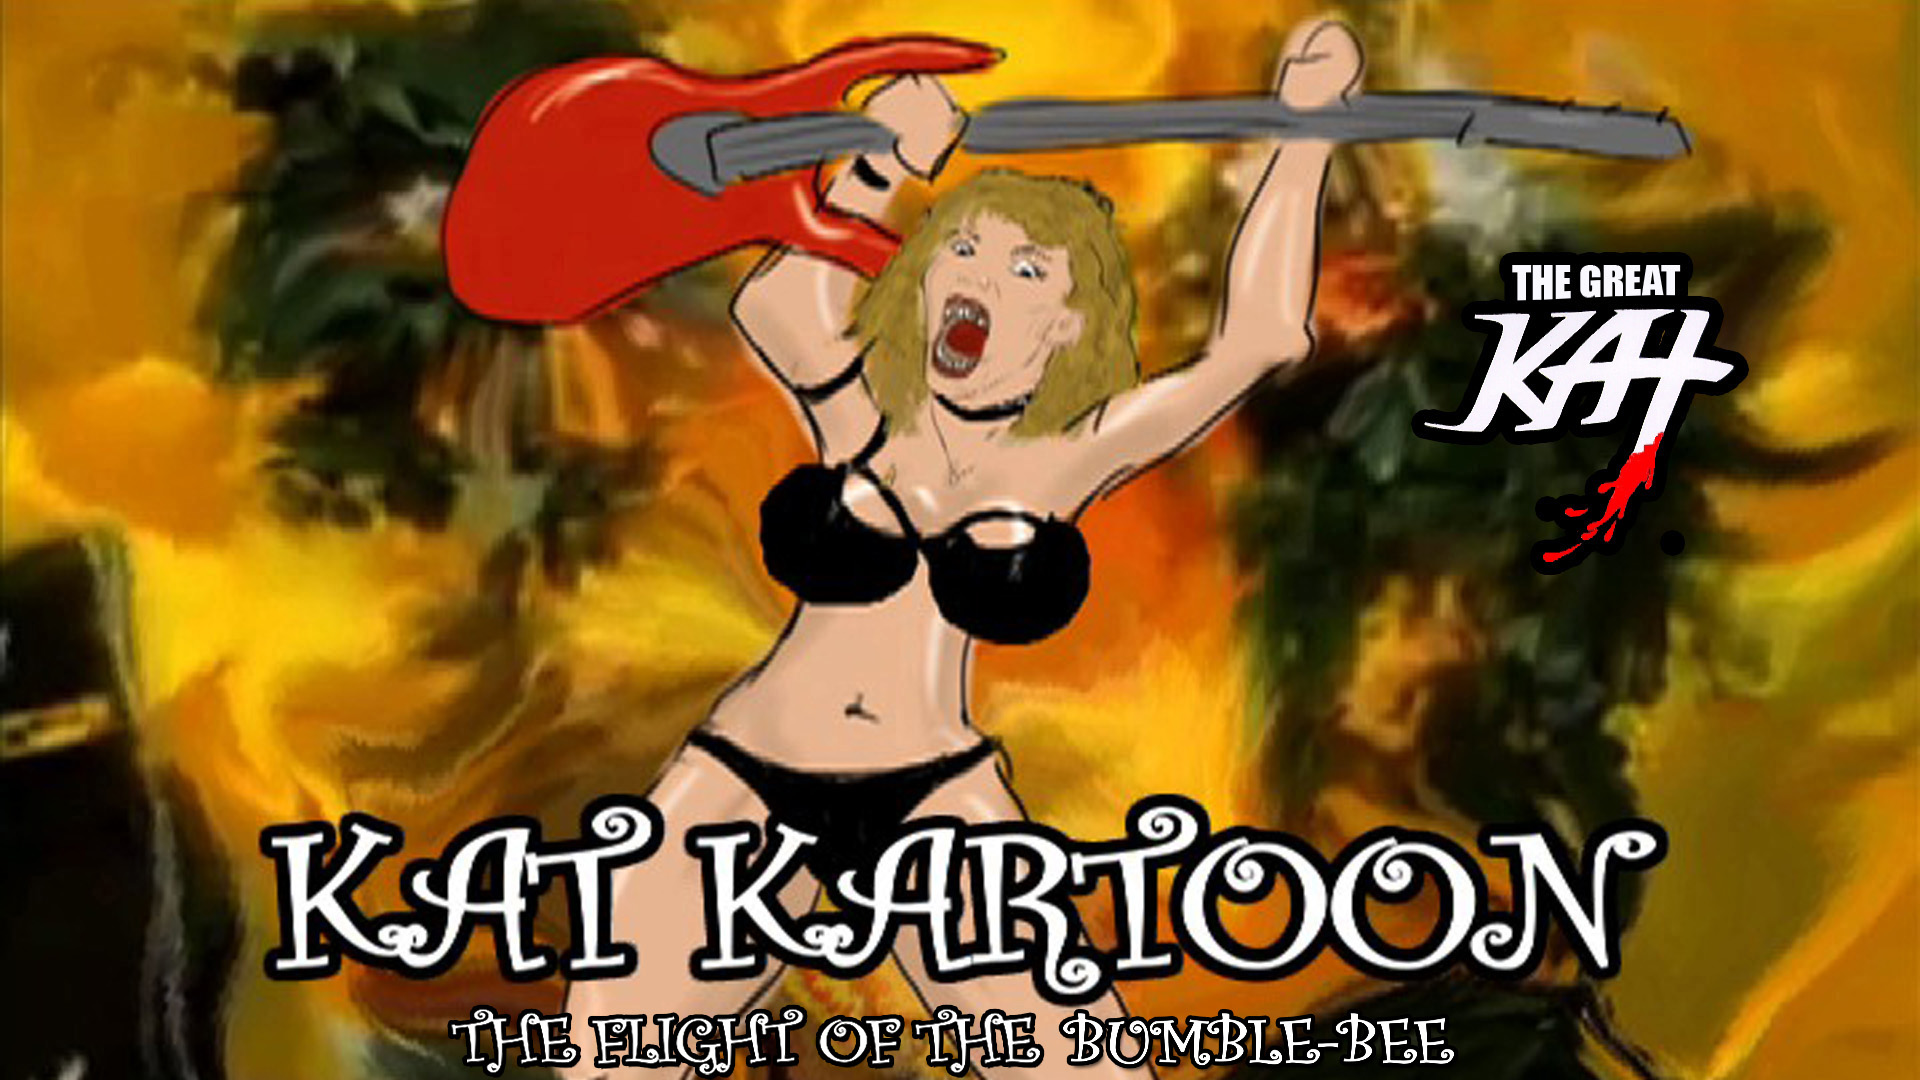 The Great KAT KAT KARTOON!